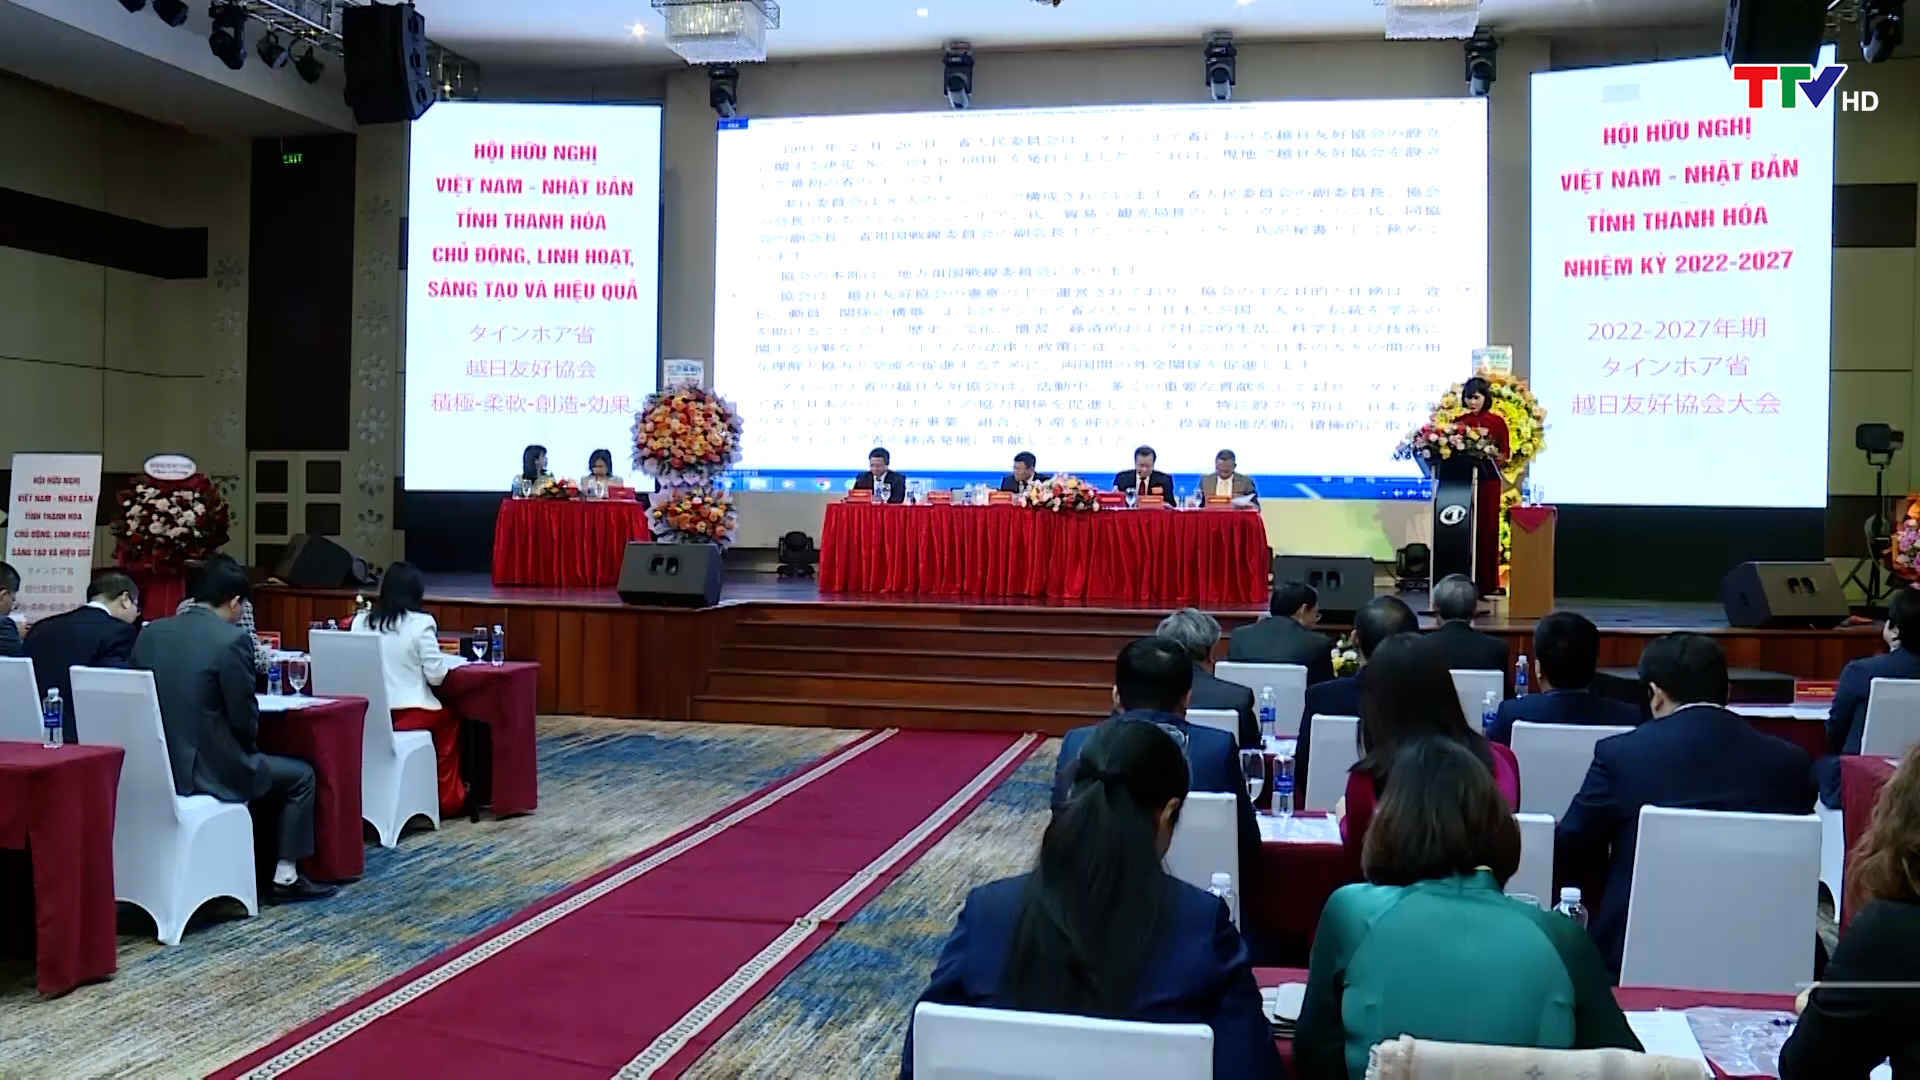 Đại hội Hội hữu nghị Việt Nam-Nhật Bản tỉnh Thanh Hóa nhiệm kỳ 2022-2027  - Ảnh 2.